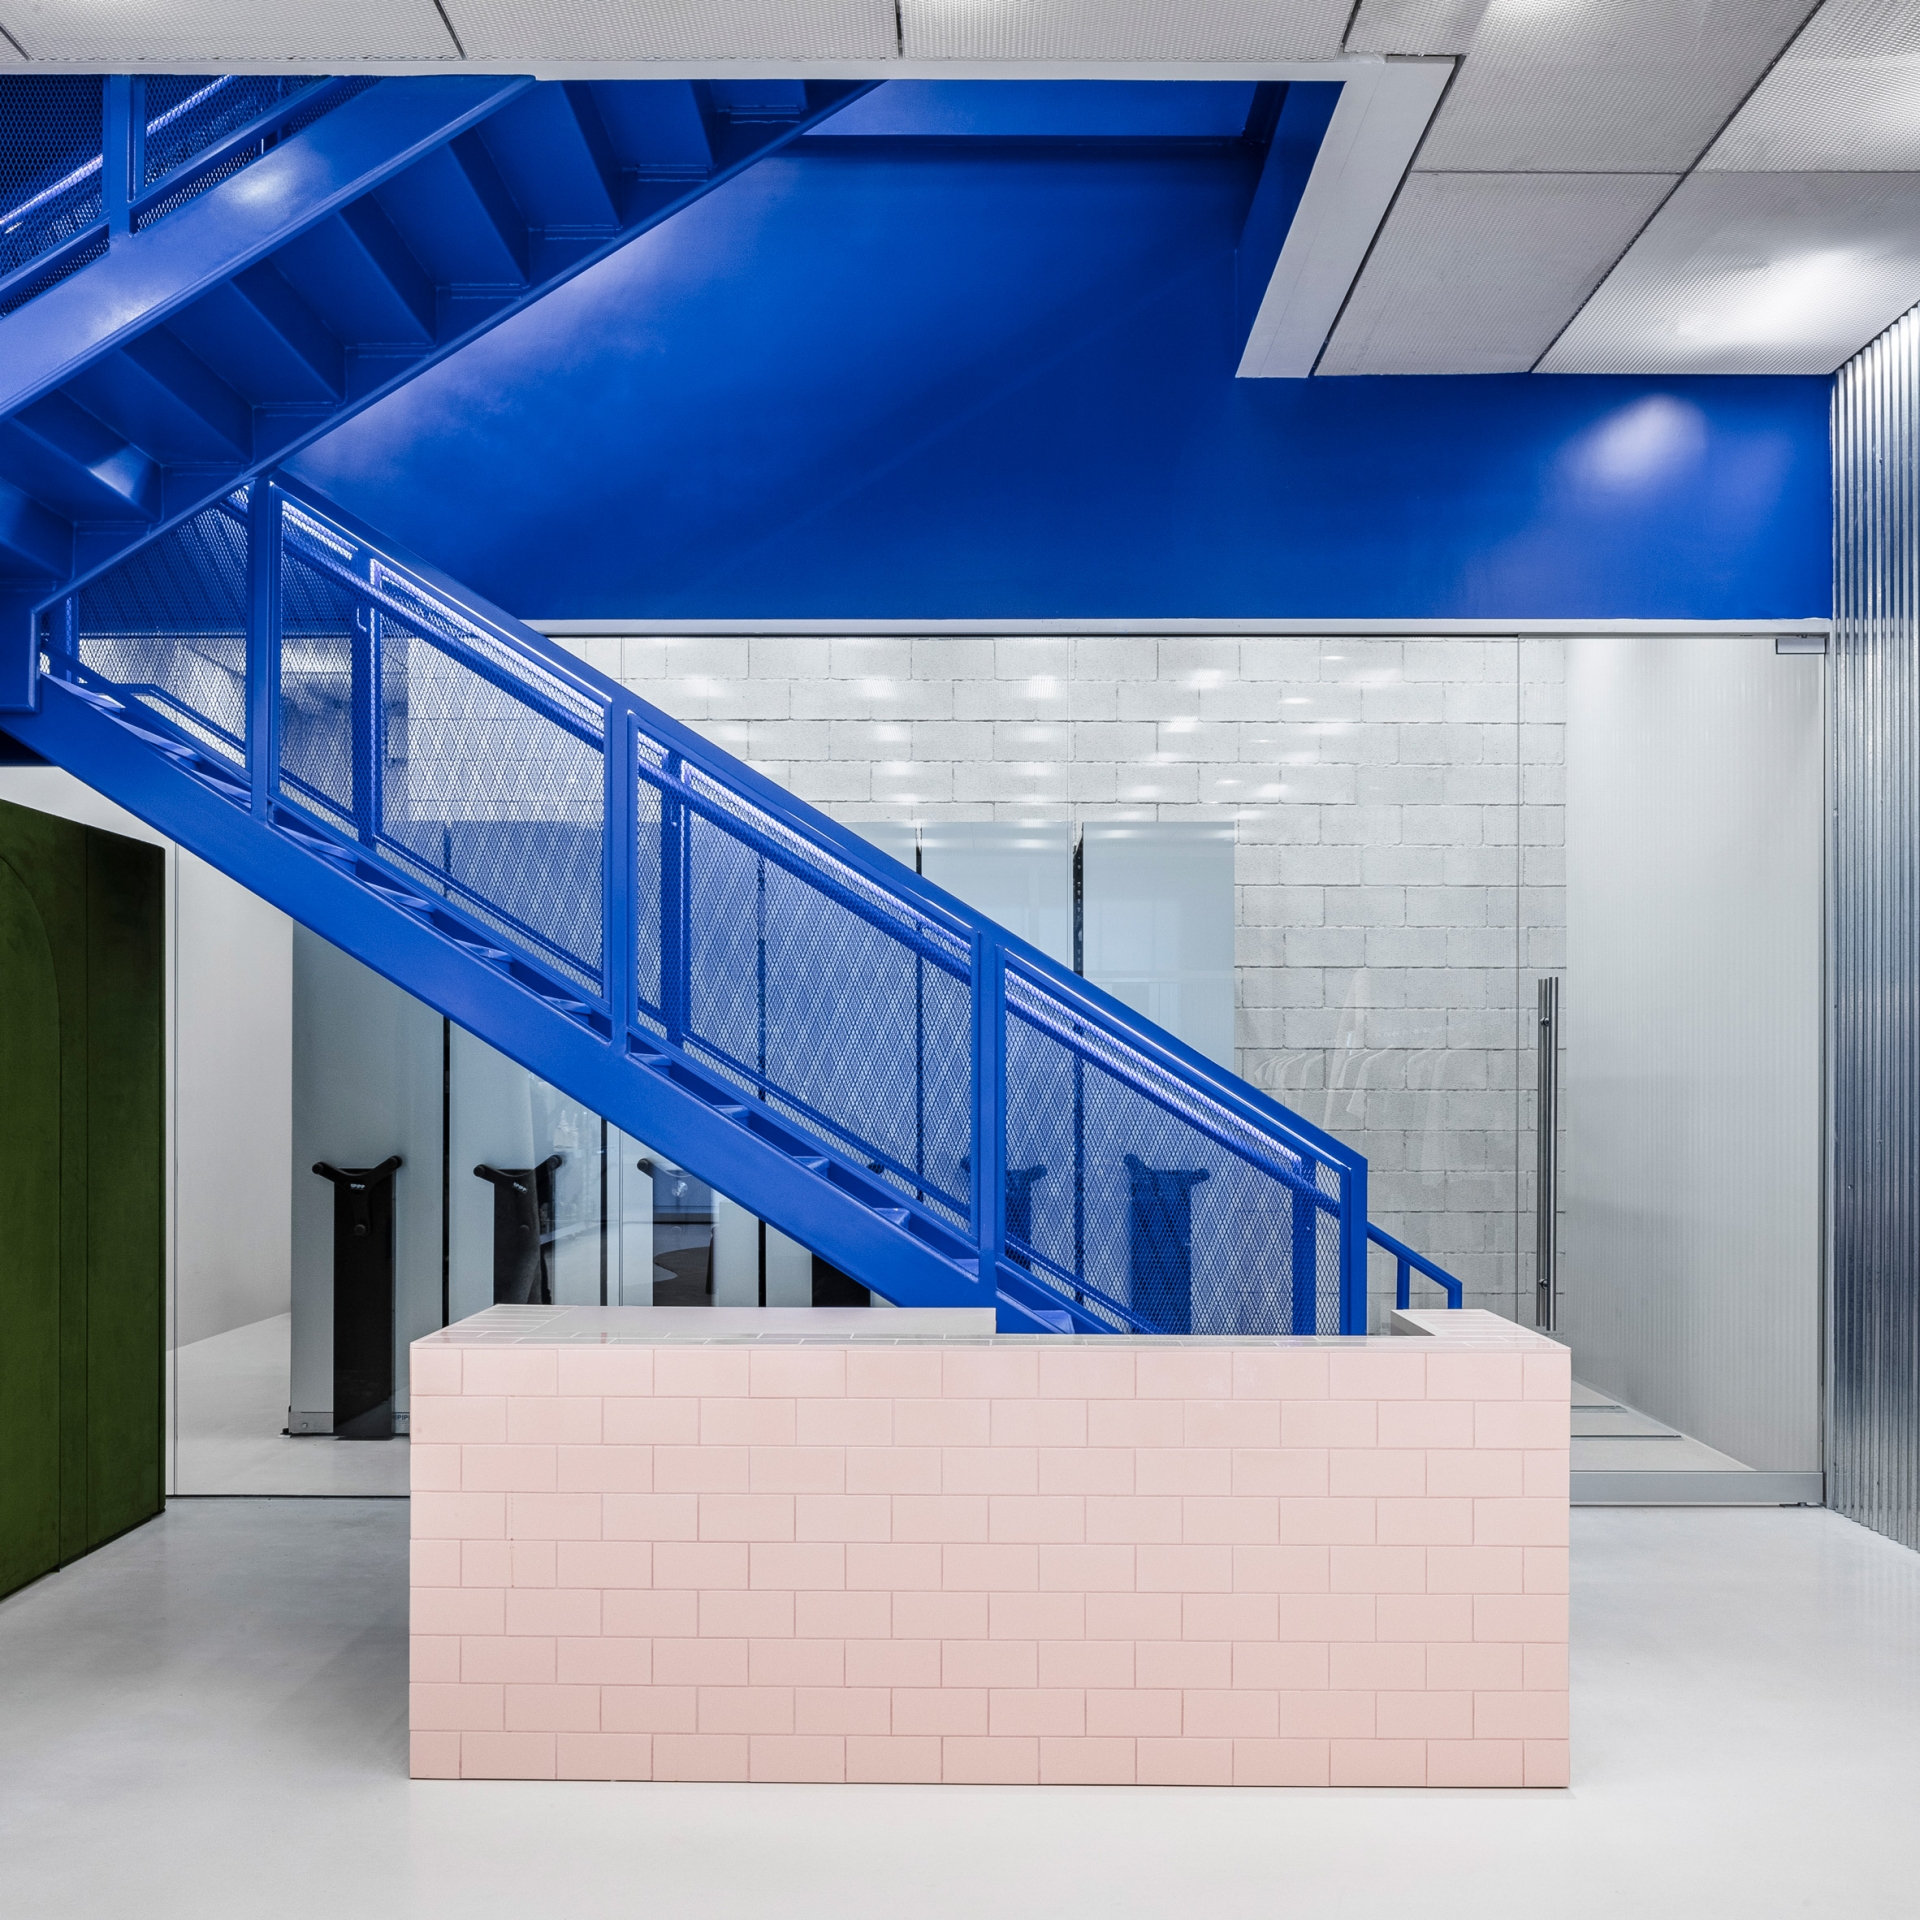 Nhà thiết kế thời trang Virgil Abloh đã thiết kế cửa hàng Off-White Flagship của mình ở Miami (Hoa Kỳ) với điểm nhấn là chiếc cầu thang màu xanh coban siêu nổi bật giữa phông nền màu trắng và khu vực quầy màu hồng pastel.